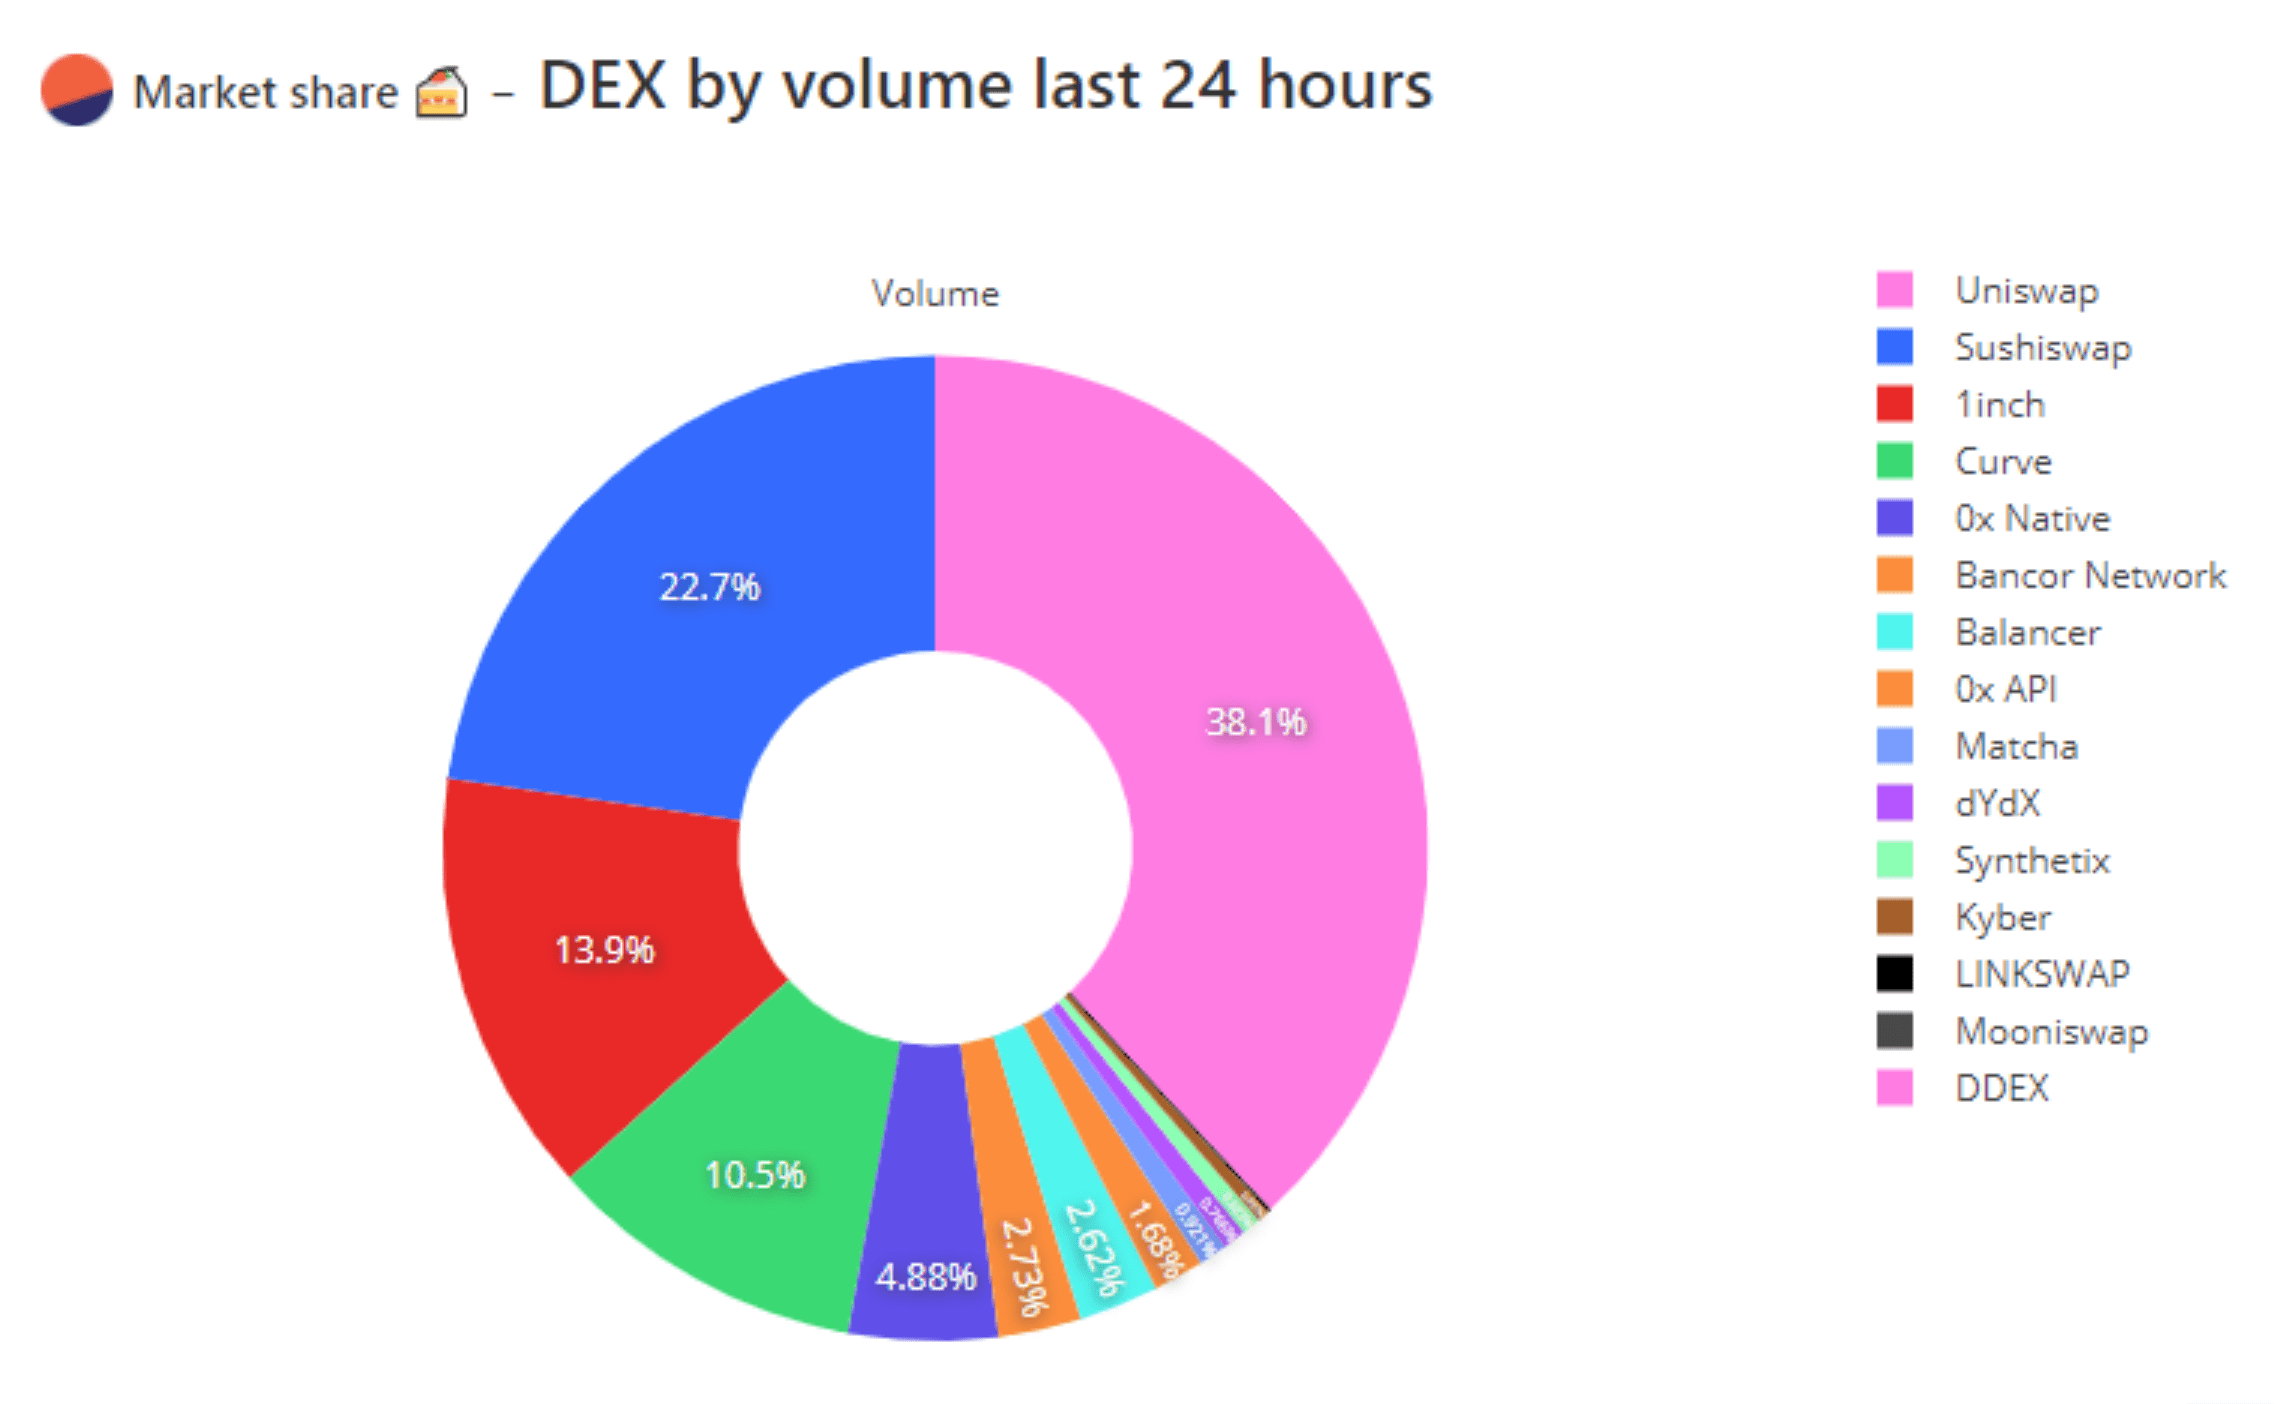 Markedsandel - DEX efter volumen de sidste 24 timer. Fonte: defiprime.com